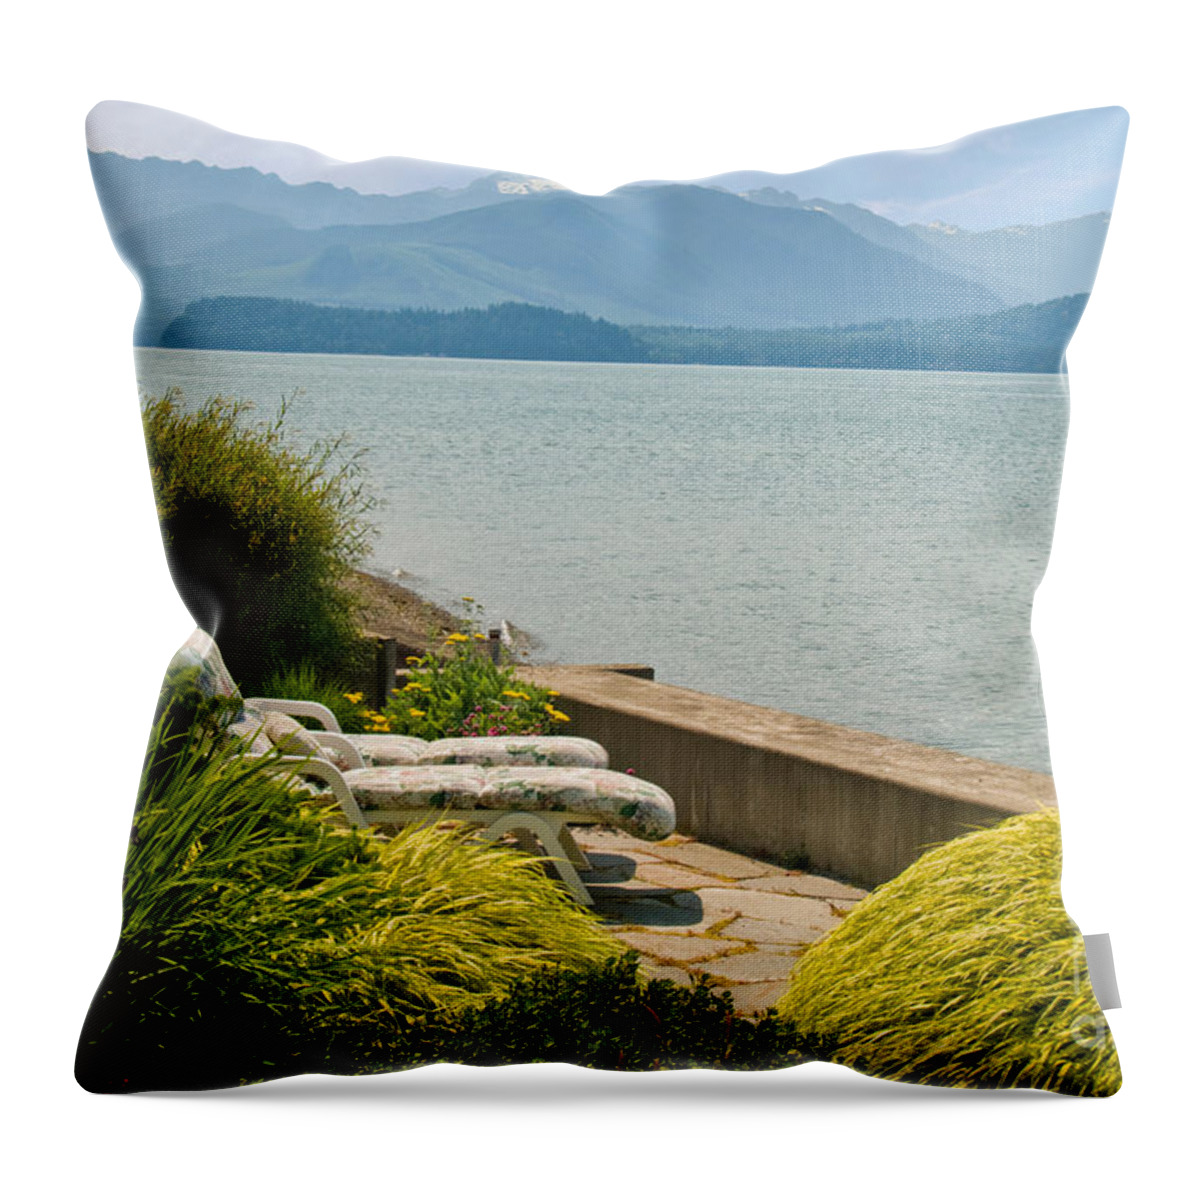 Seaside Garden Throw Pillow featuring the photograph Seaside Garden by Richard and Ellen Thane